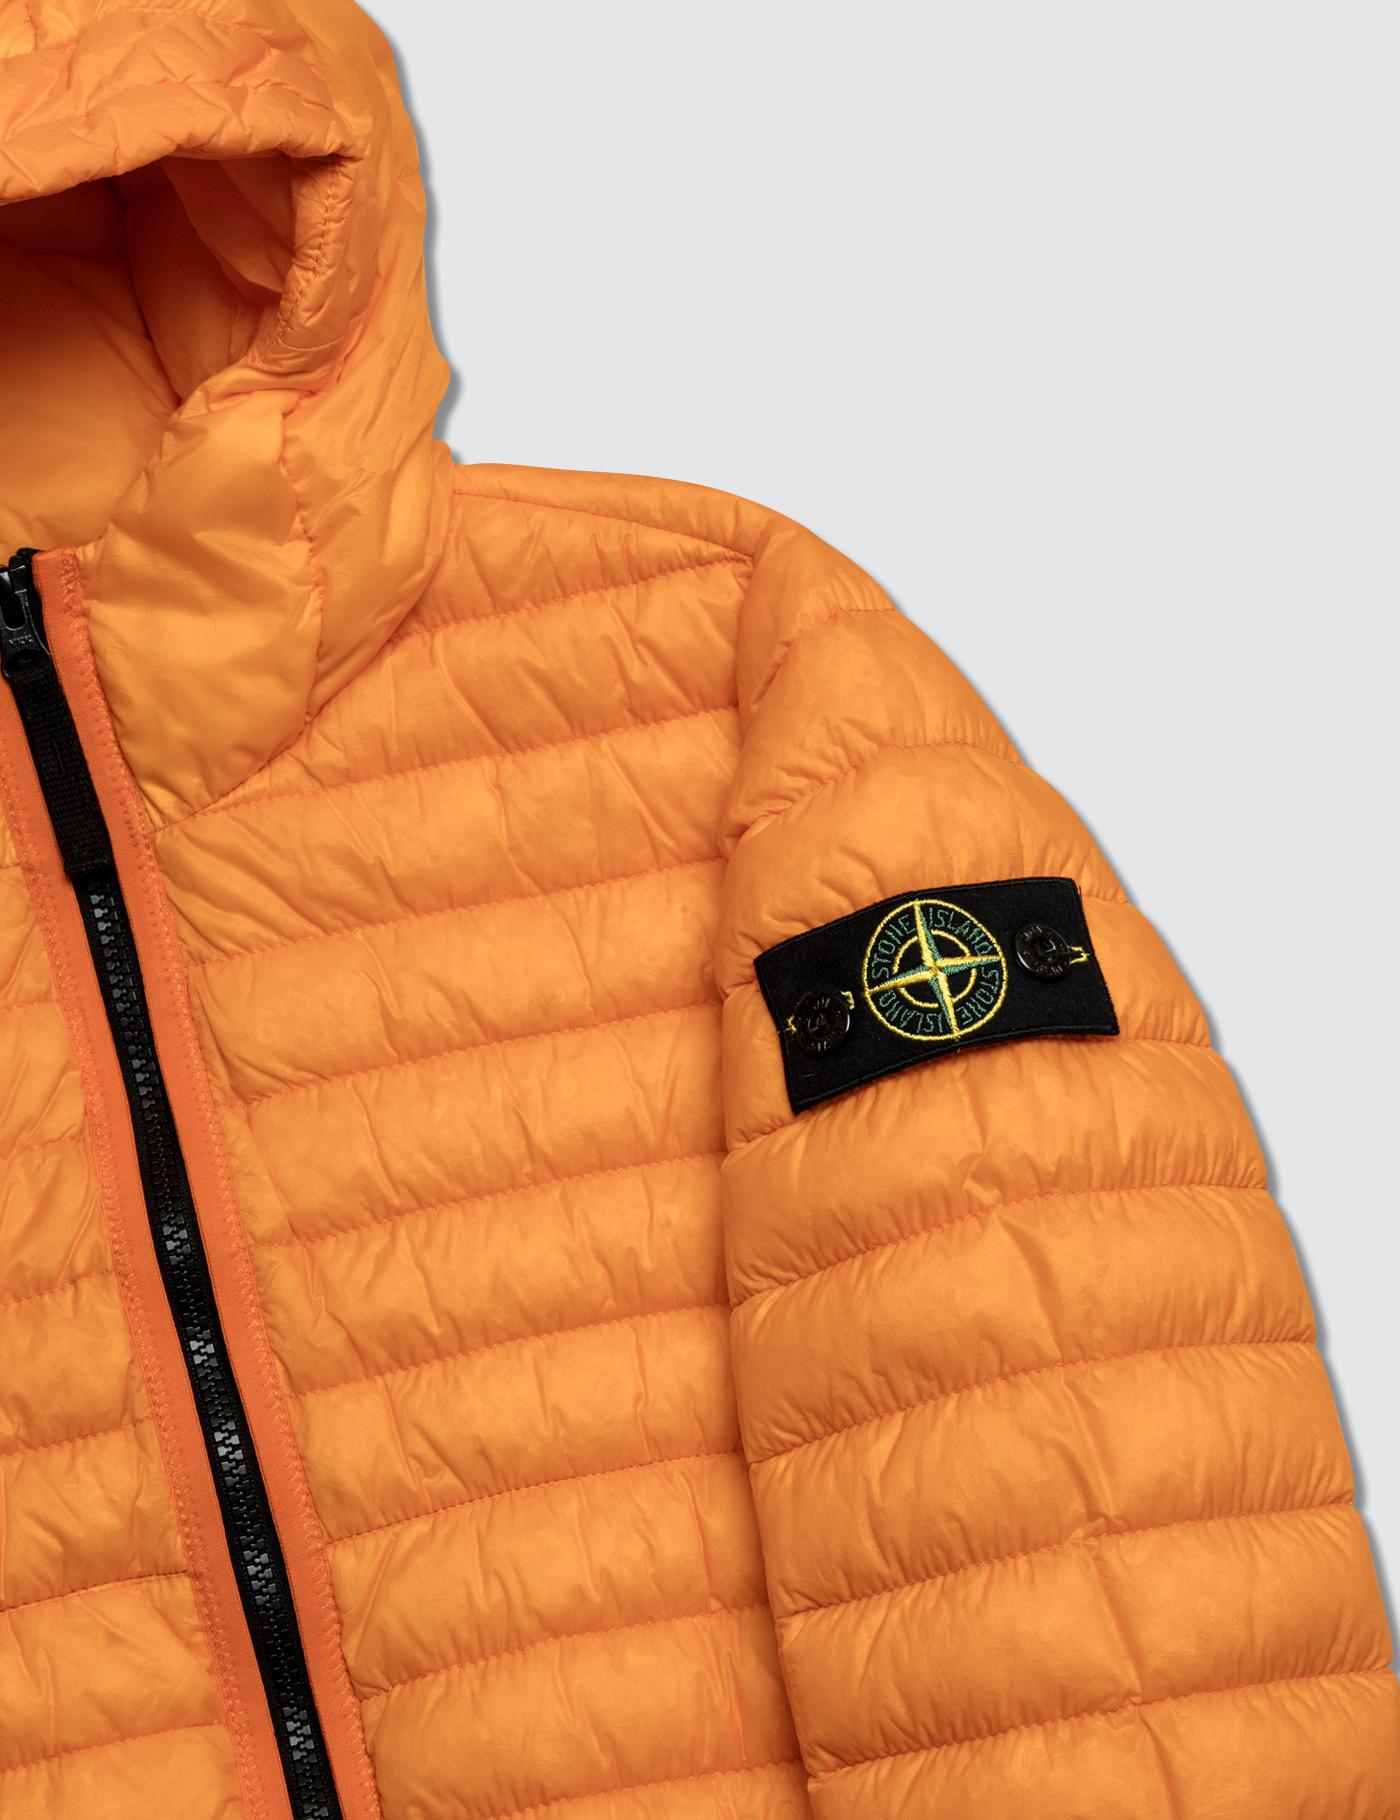 Purchase > bright orange stone island jacket, Up to 68% OFF